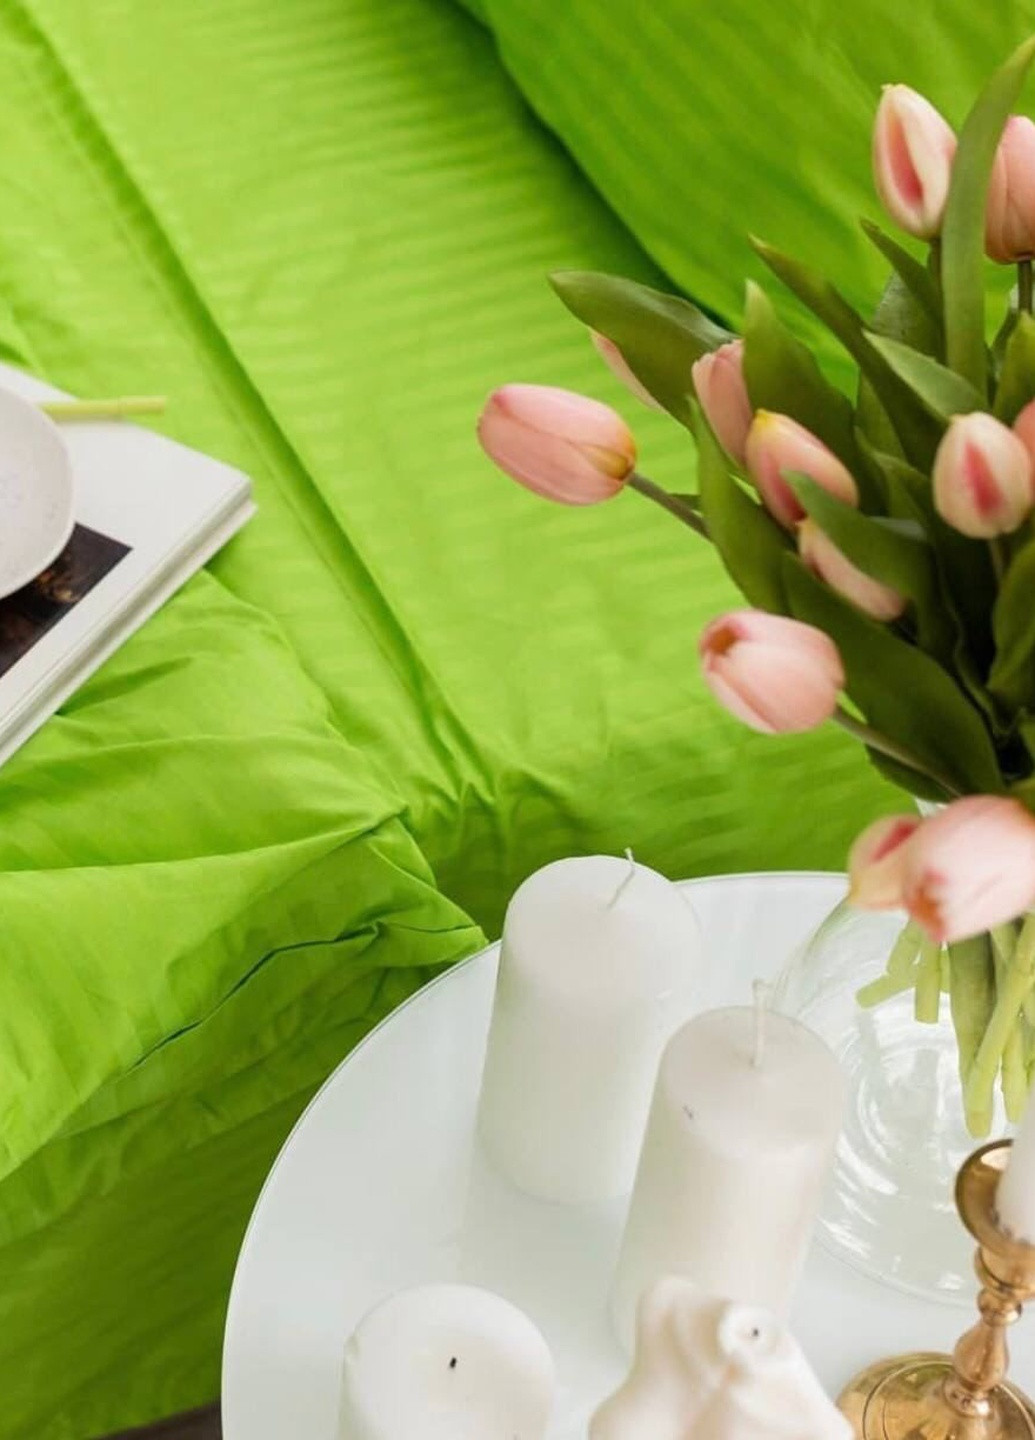 Комплект постельного белья Satin Stripe Light green 100% хлопок 220х200 см евро No Brand (259942523)